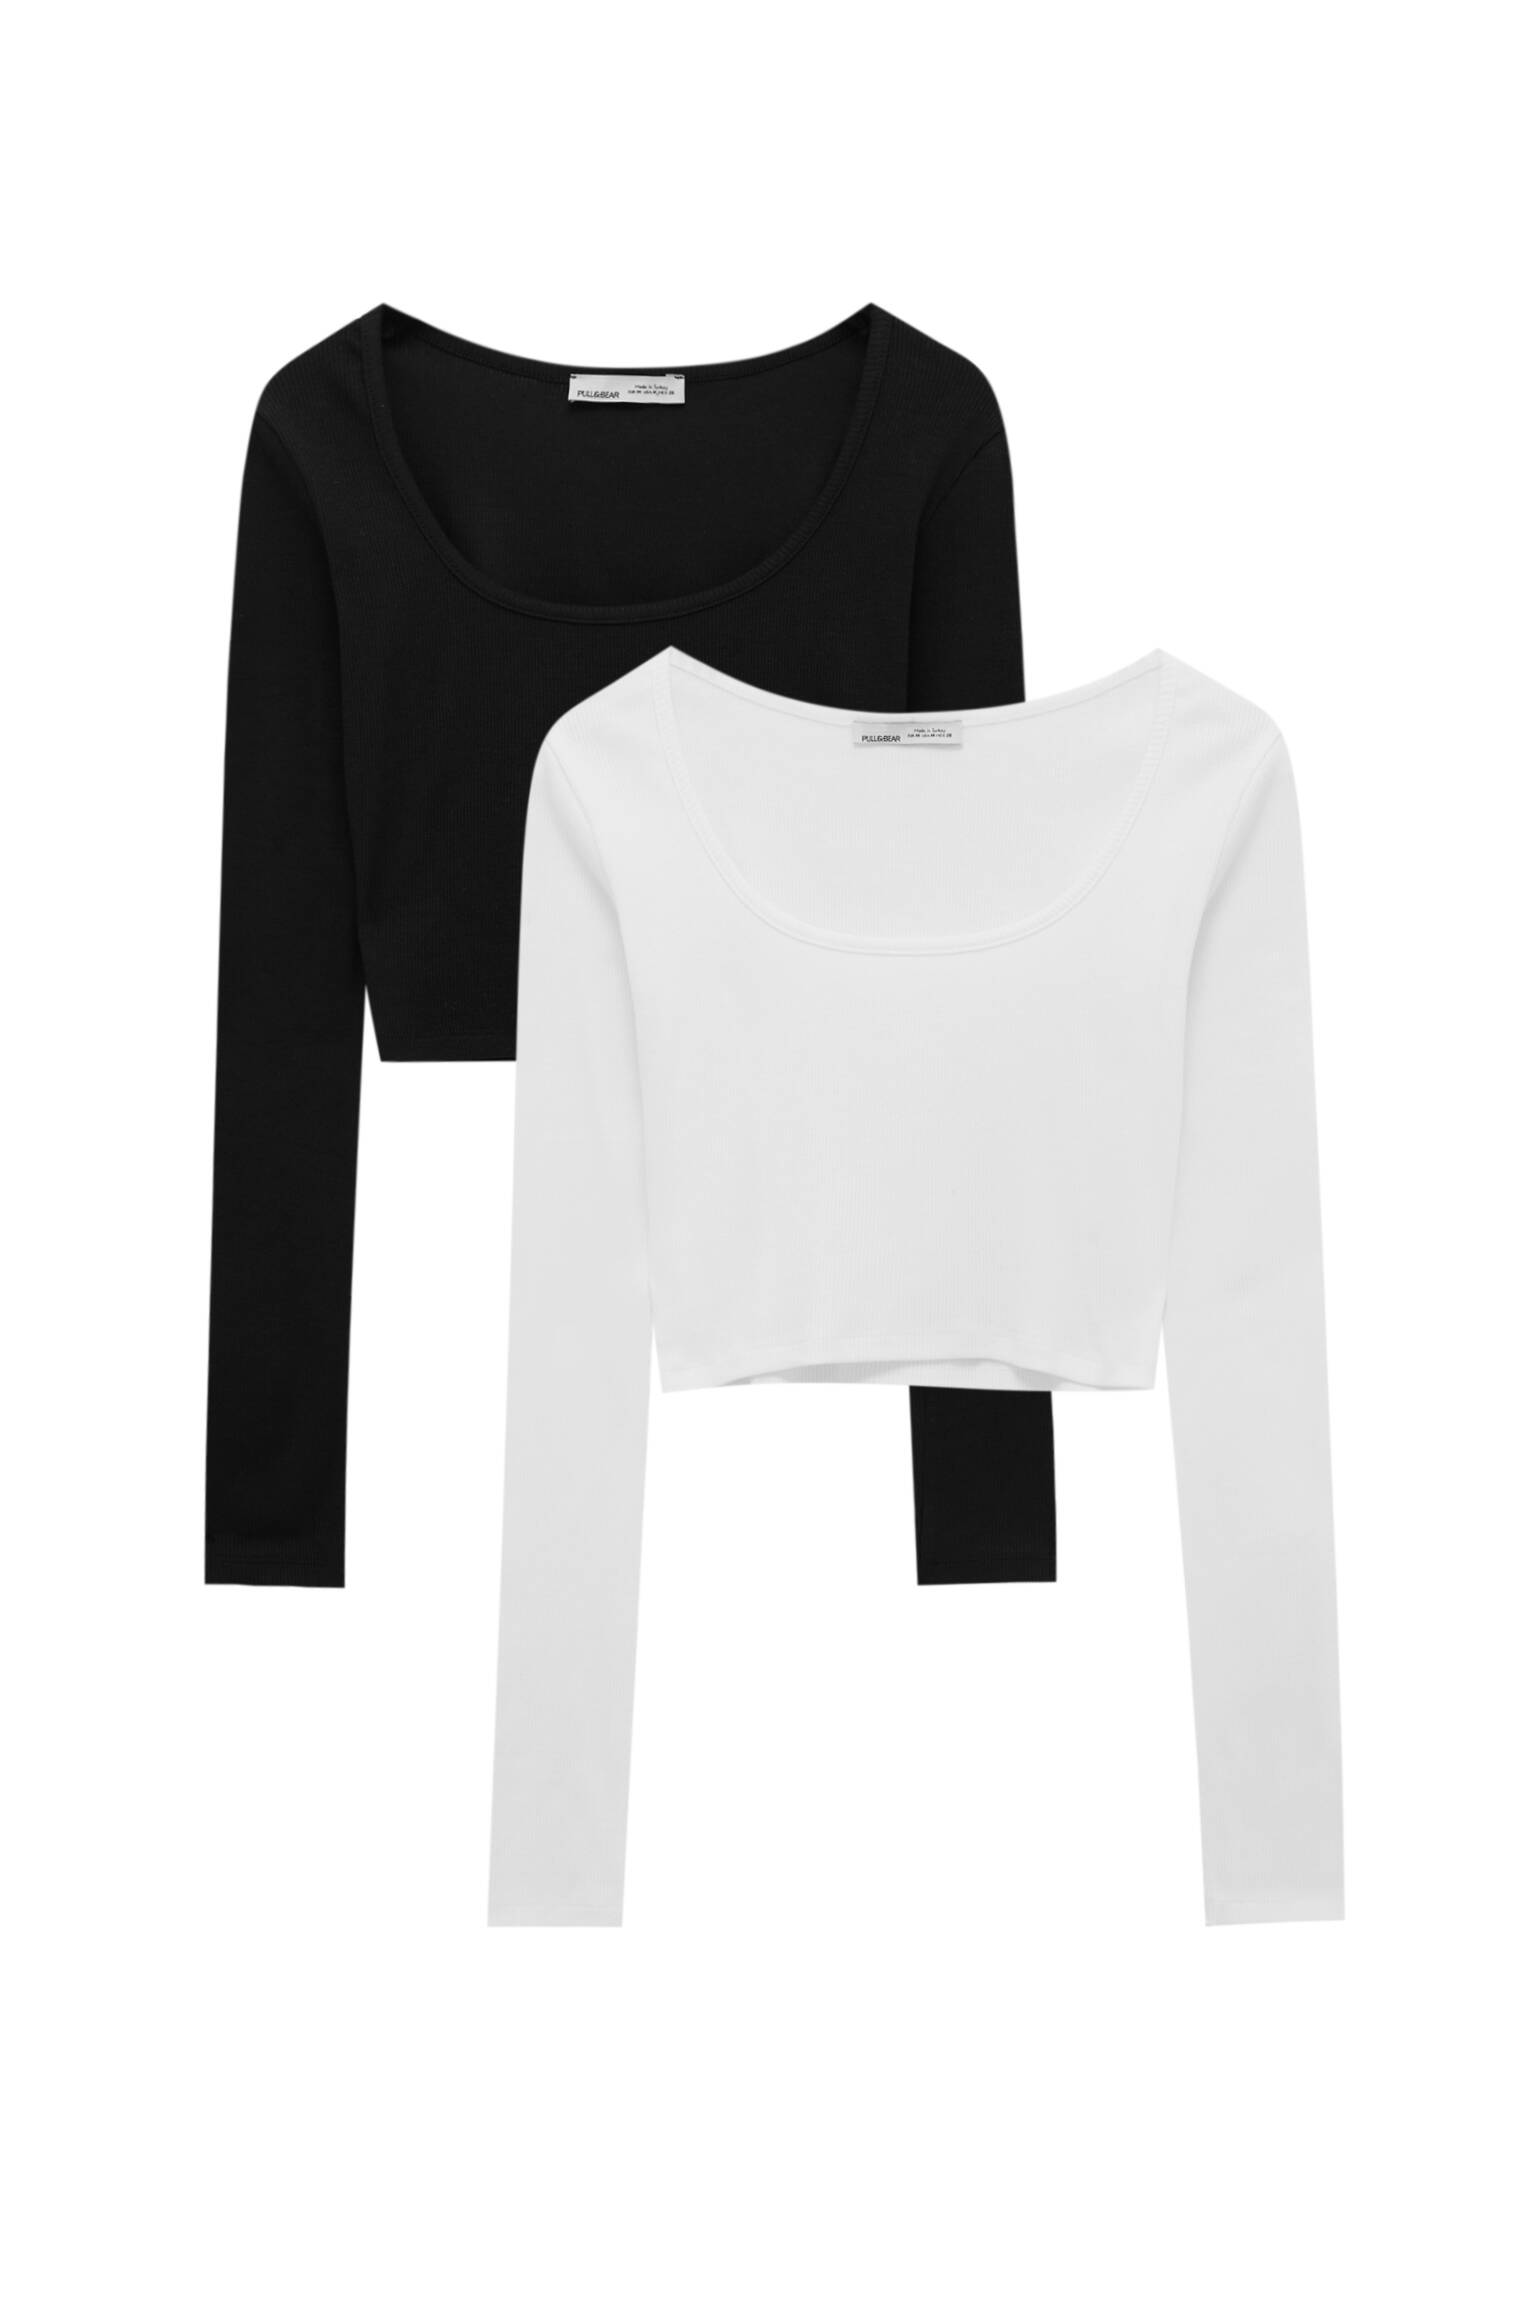 Pull&bear Femme Pack De Deux T-shirts Courts à Col Rond Et Manches Longues. Noir/blanc M